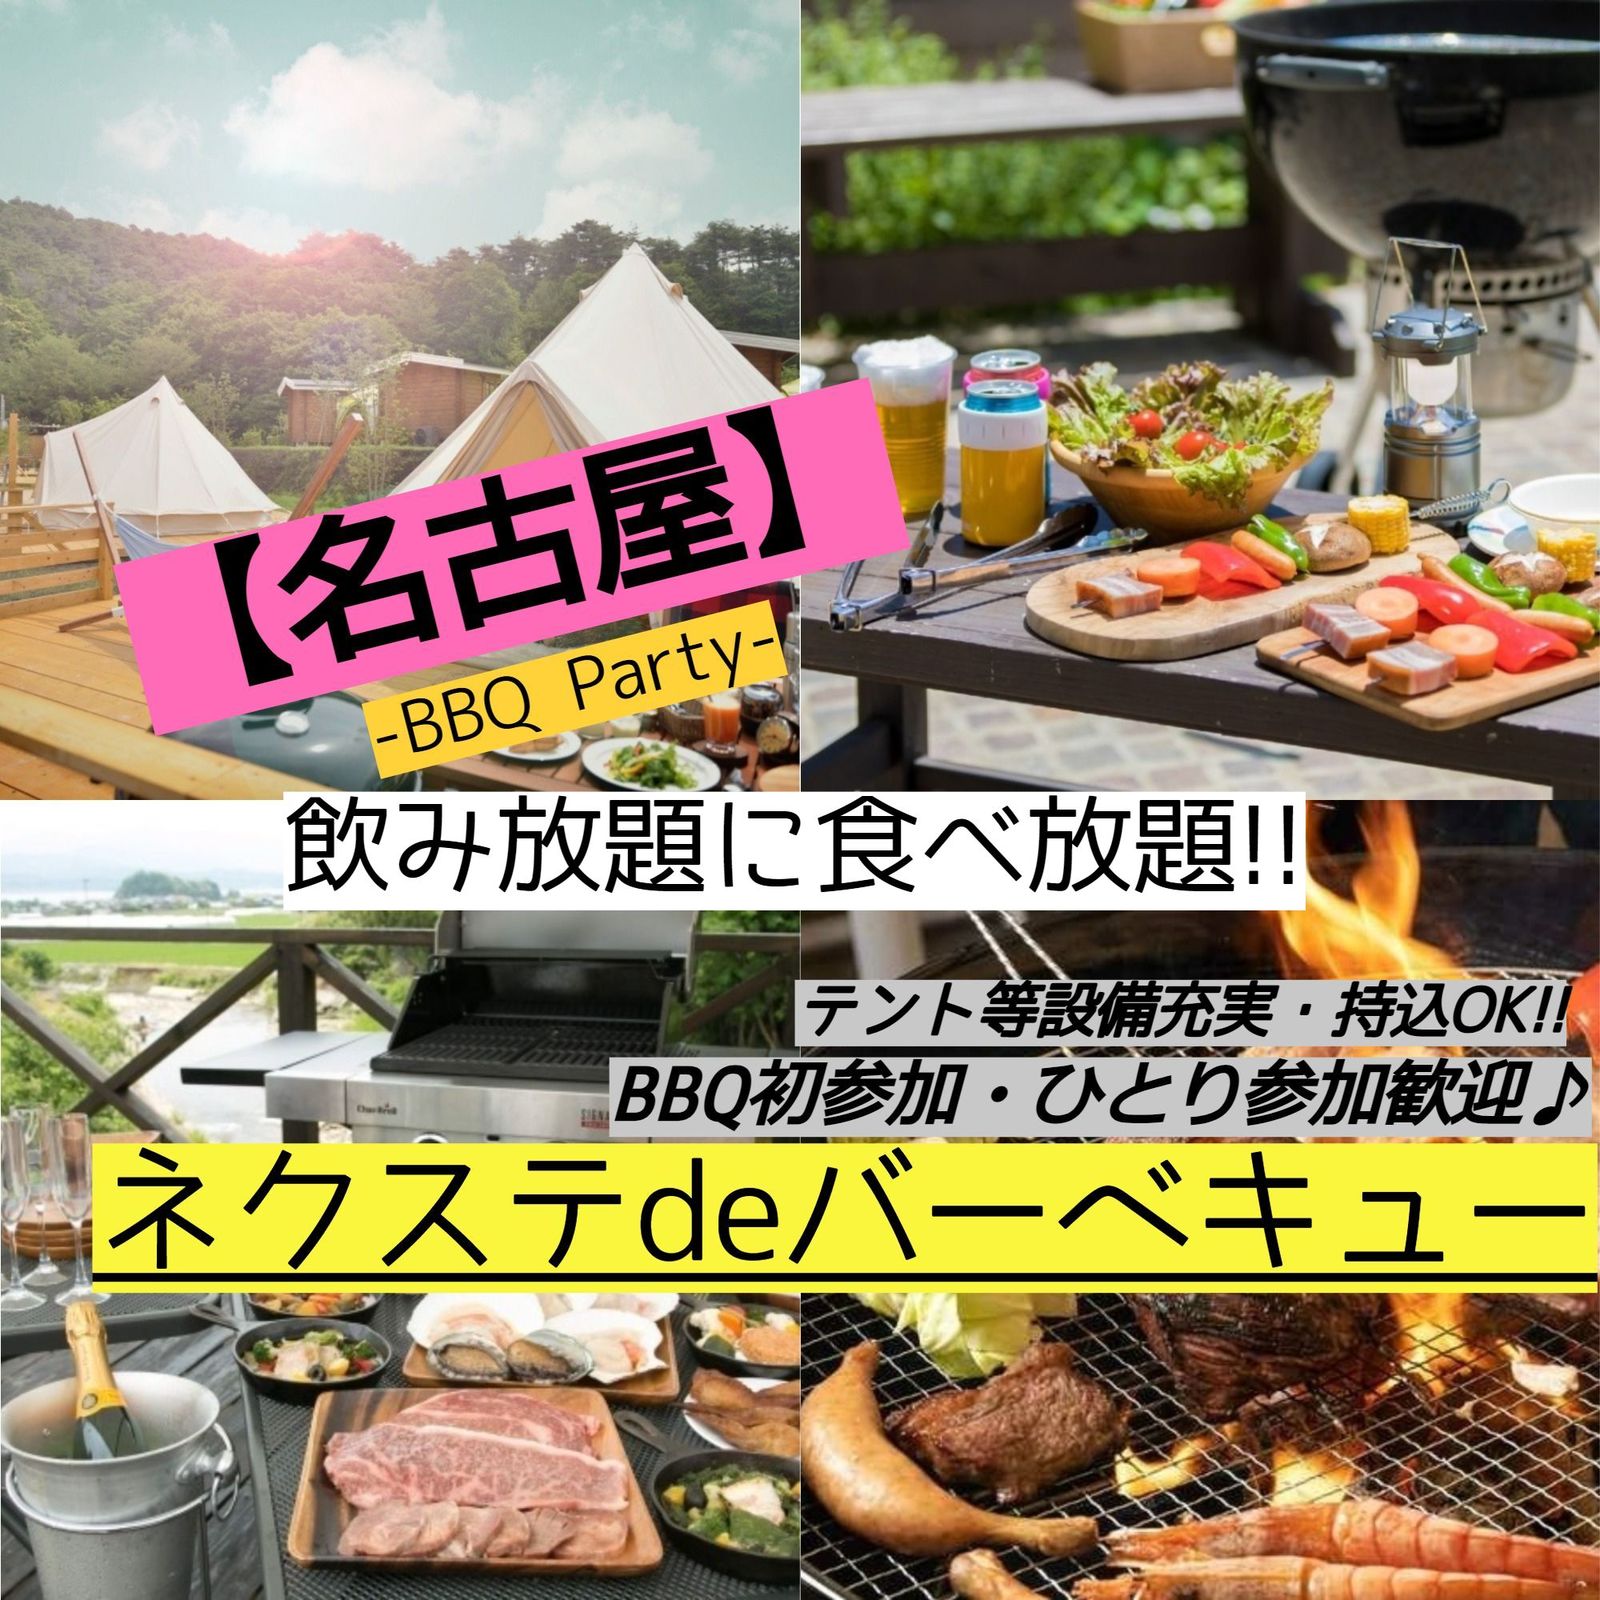 5月28日(日曜)【毎月2回開催・女性主催・名古屋市内・BBQ】飲み・食べ放題!!素敵に本格的なBBQ♪【ネクステdeバーベキュー会】